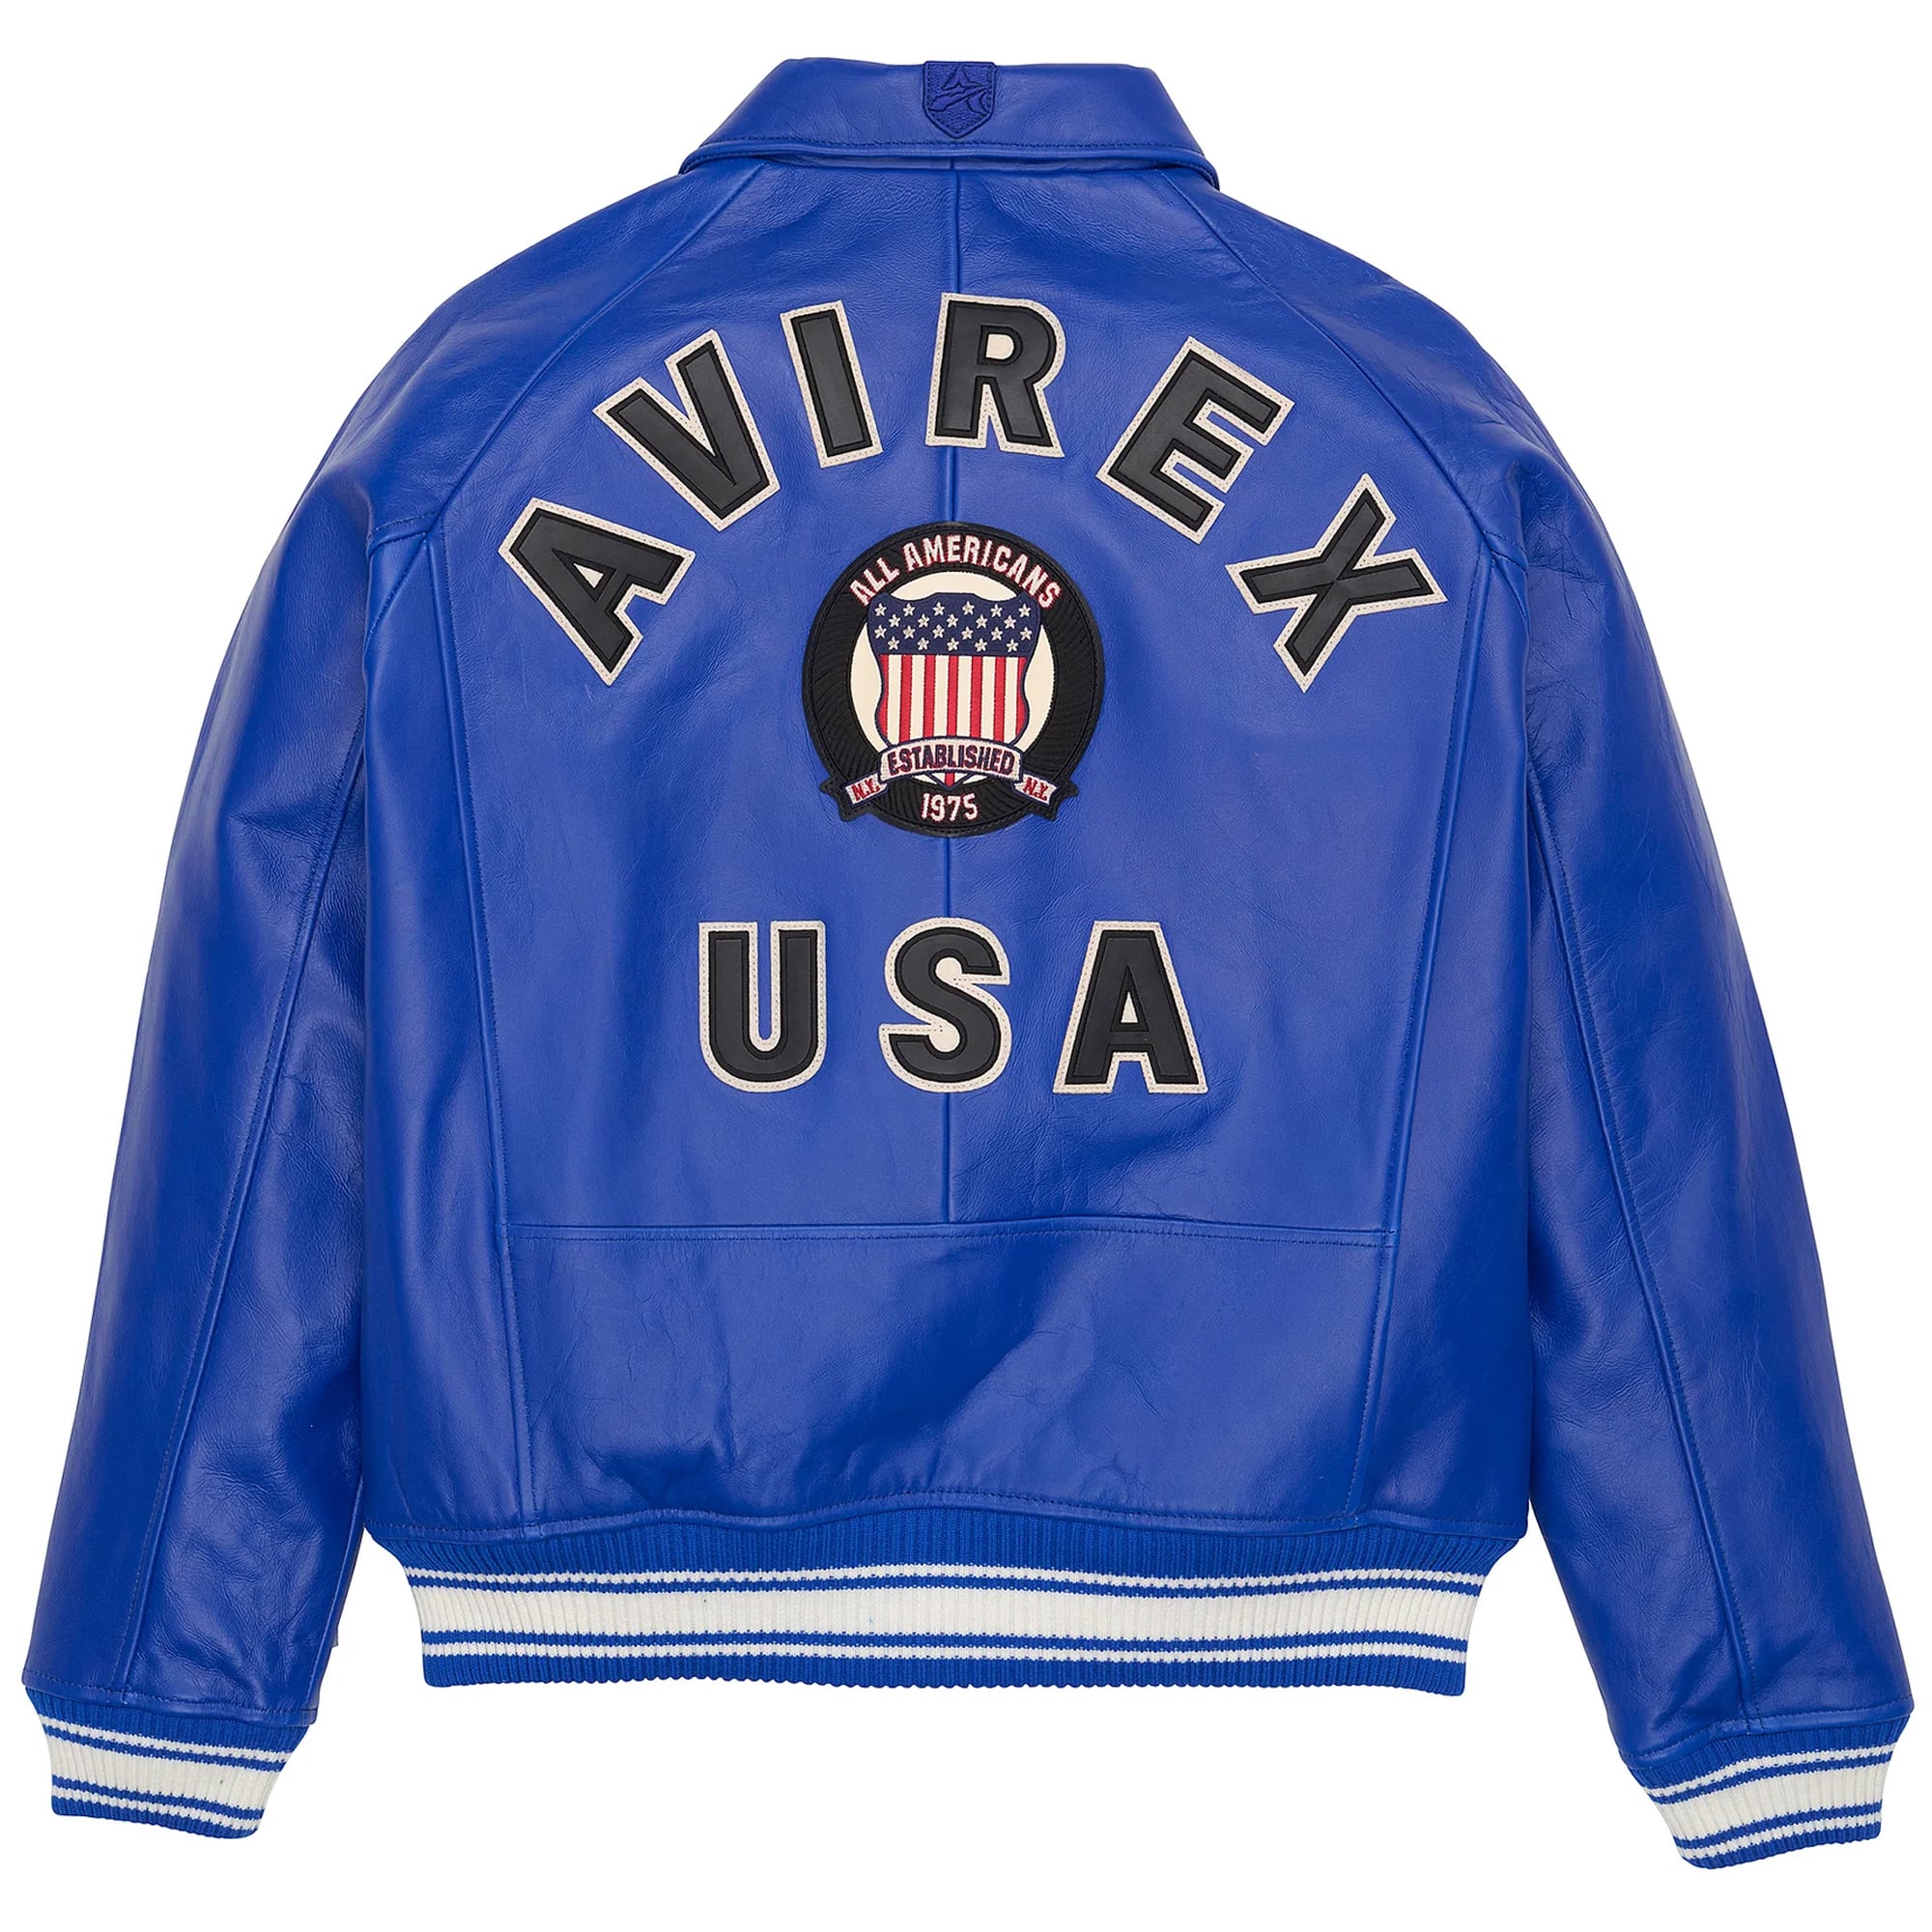 Men's Avirex Leather Jacket Iconic Avirex jacket (Cobalt Blue)